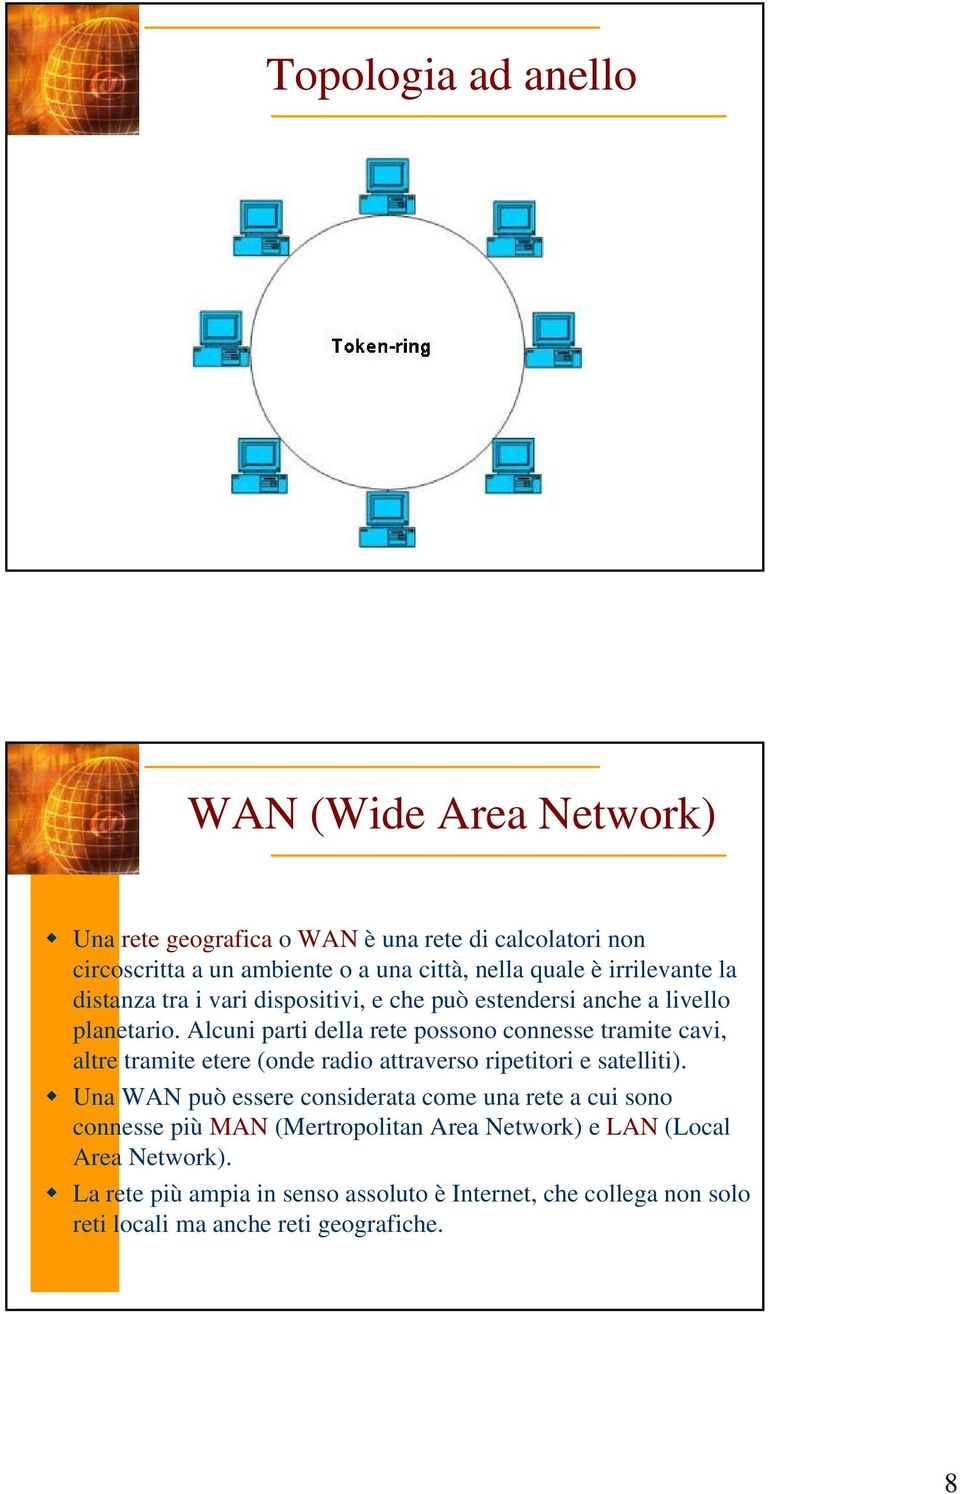 Alcuni parti della rete possono connesse tramite cavi, altre tramite etere (onde radio attraverso ripetitori e satelliti).